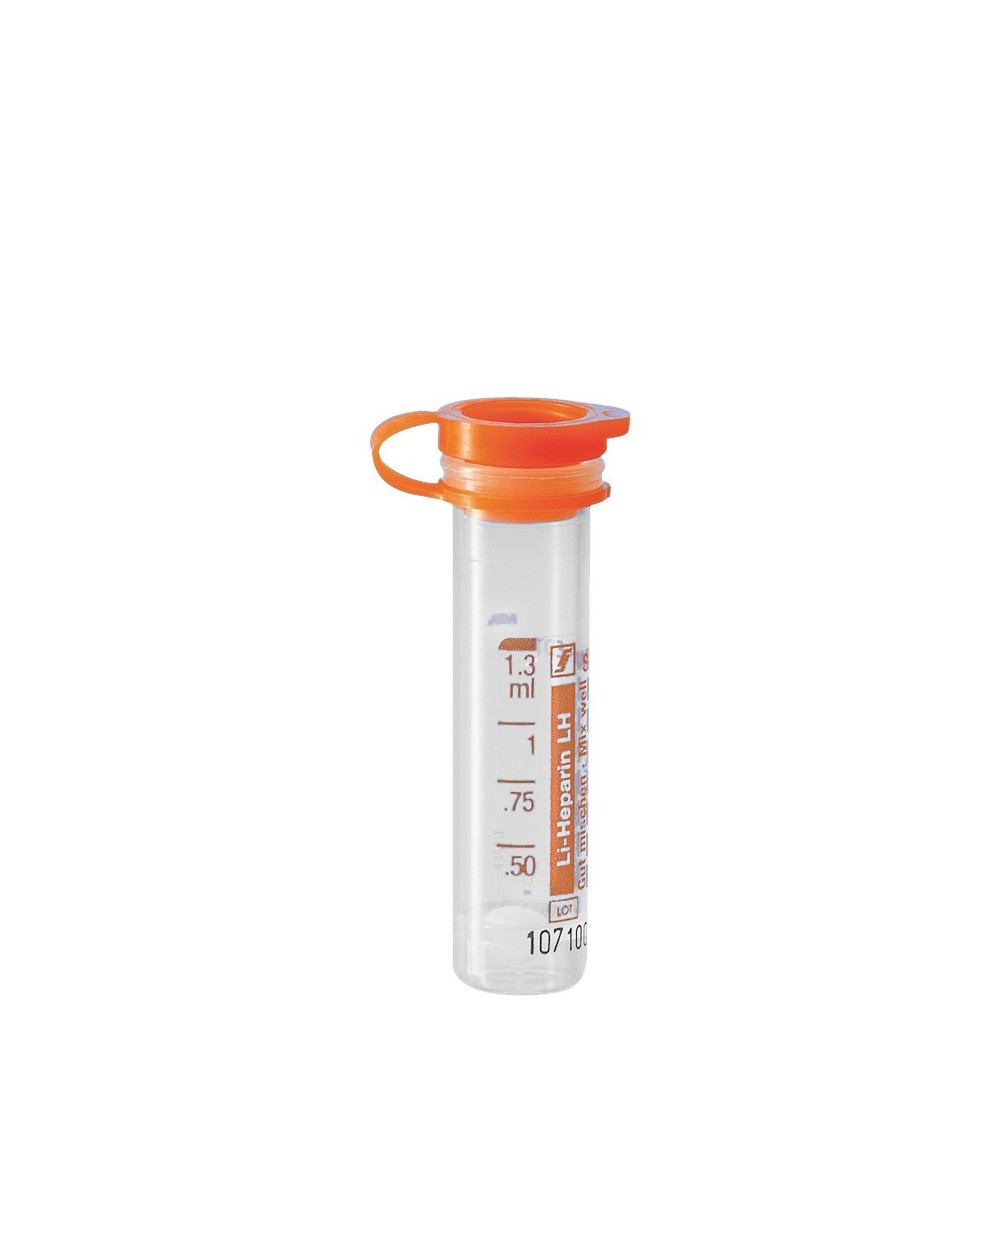 SARSTEDT Mikro Probengefäße 1,3 ml Litium-Heparin, Oranger Deckel - 1